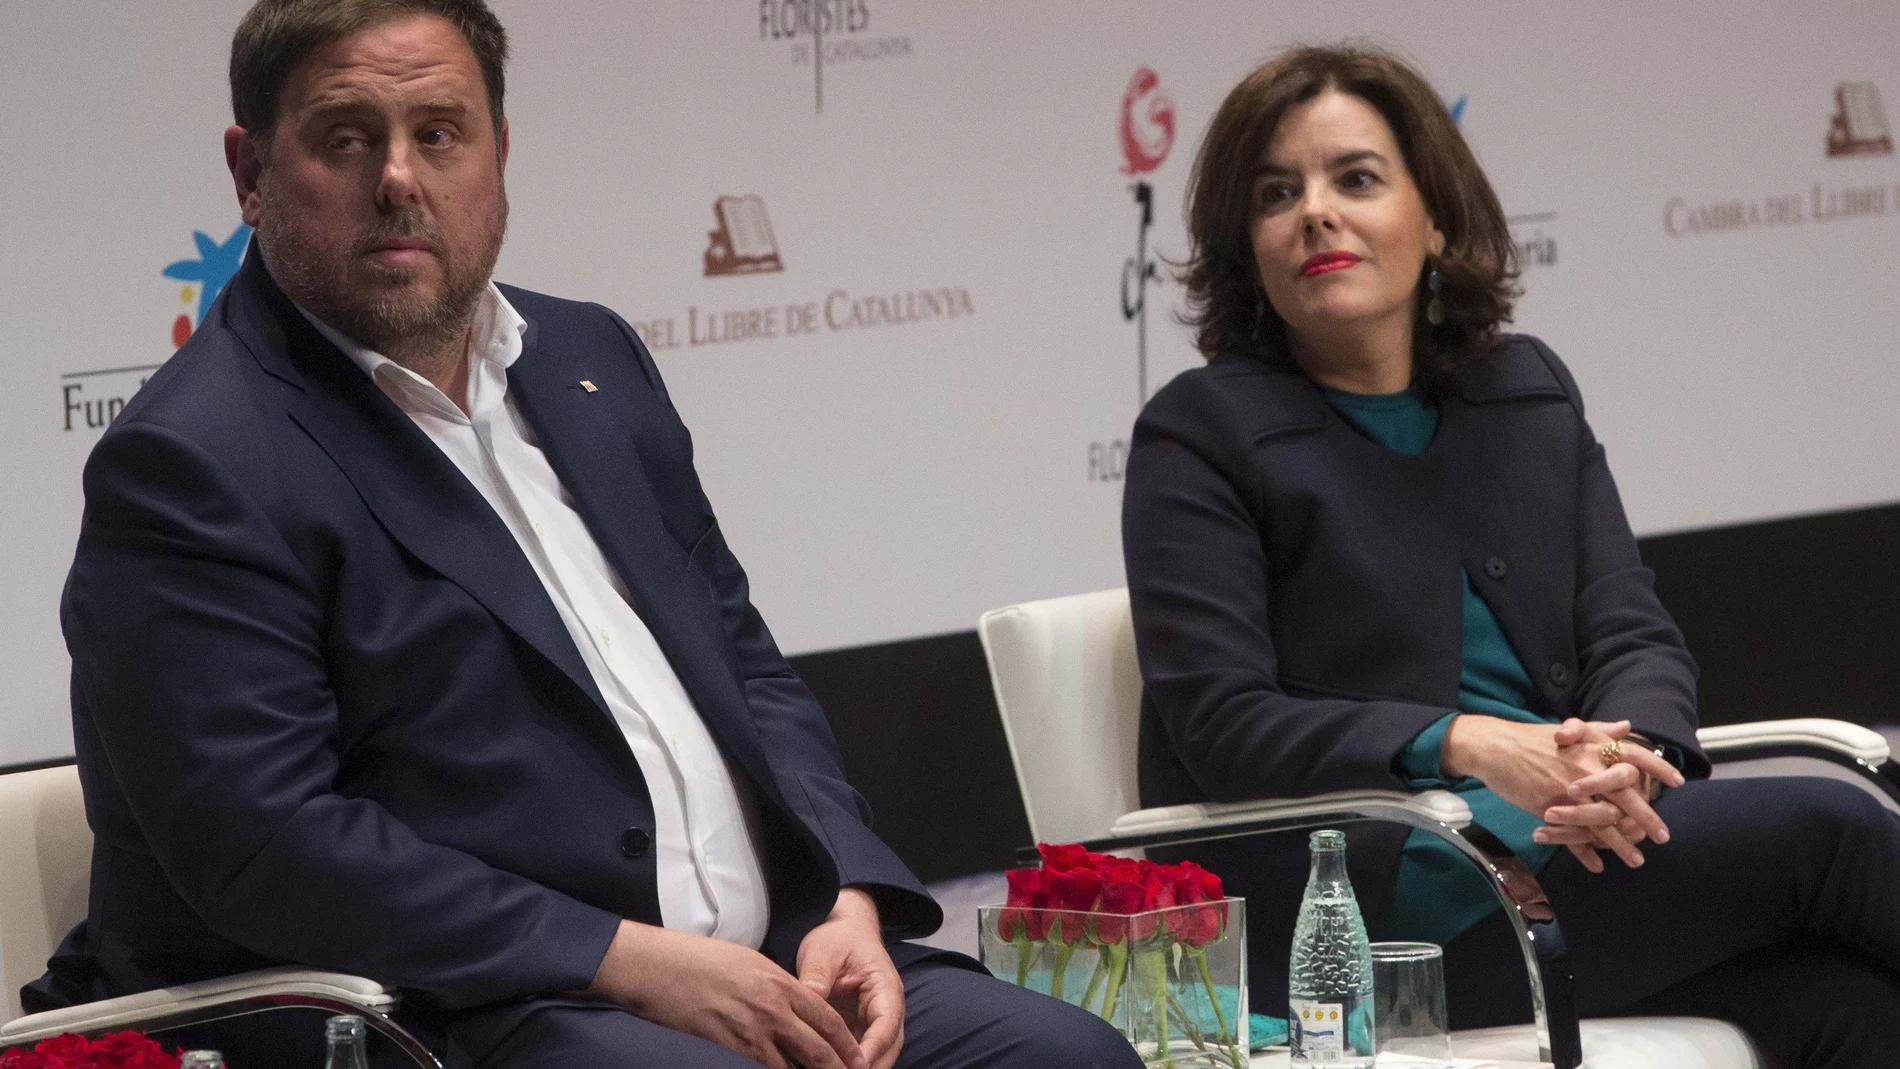 La vicepresidenta del Gobierno y el vicepresidente de la Generalitat de Cataluña durante el acto